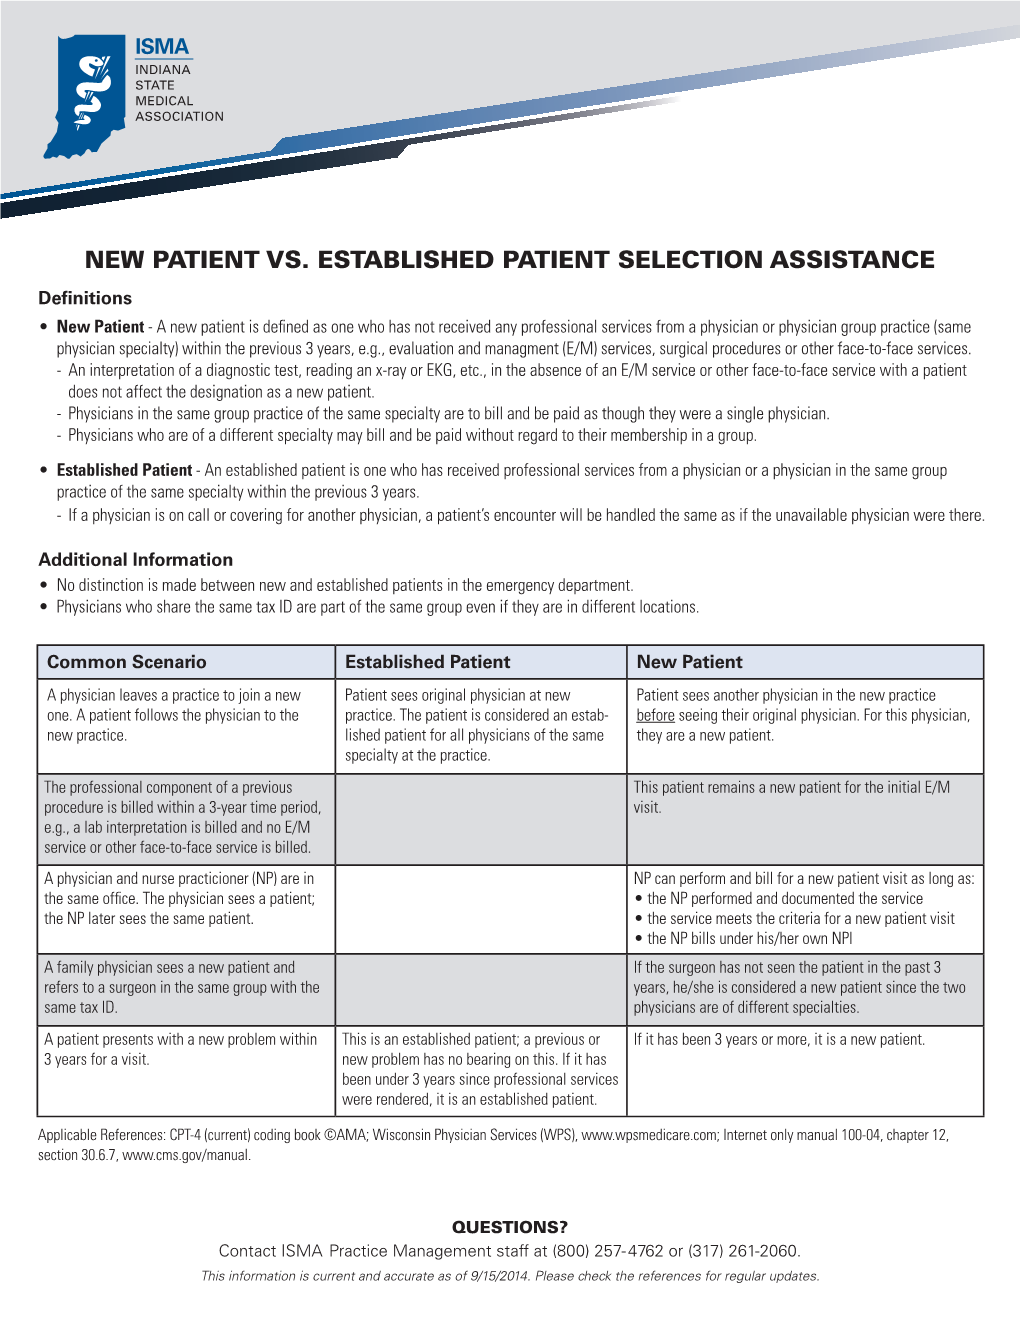 New Patient Vs. Established Patient Selection Assistance